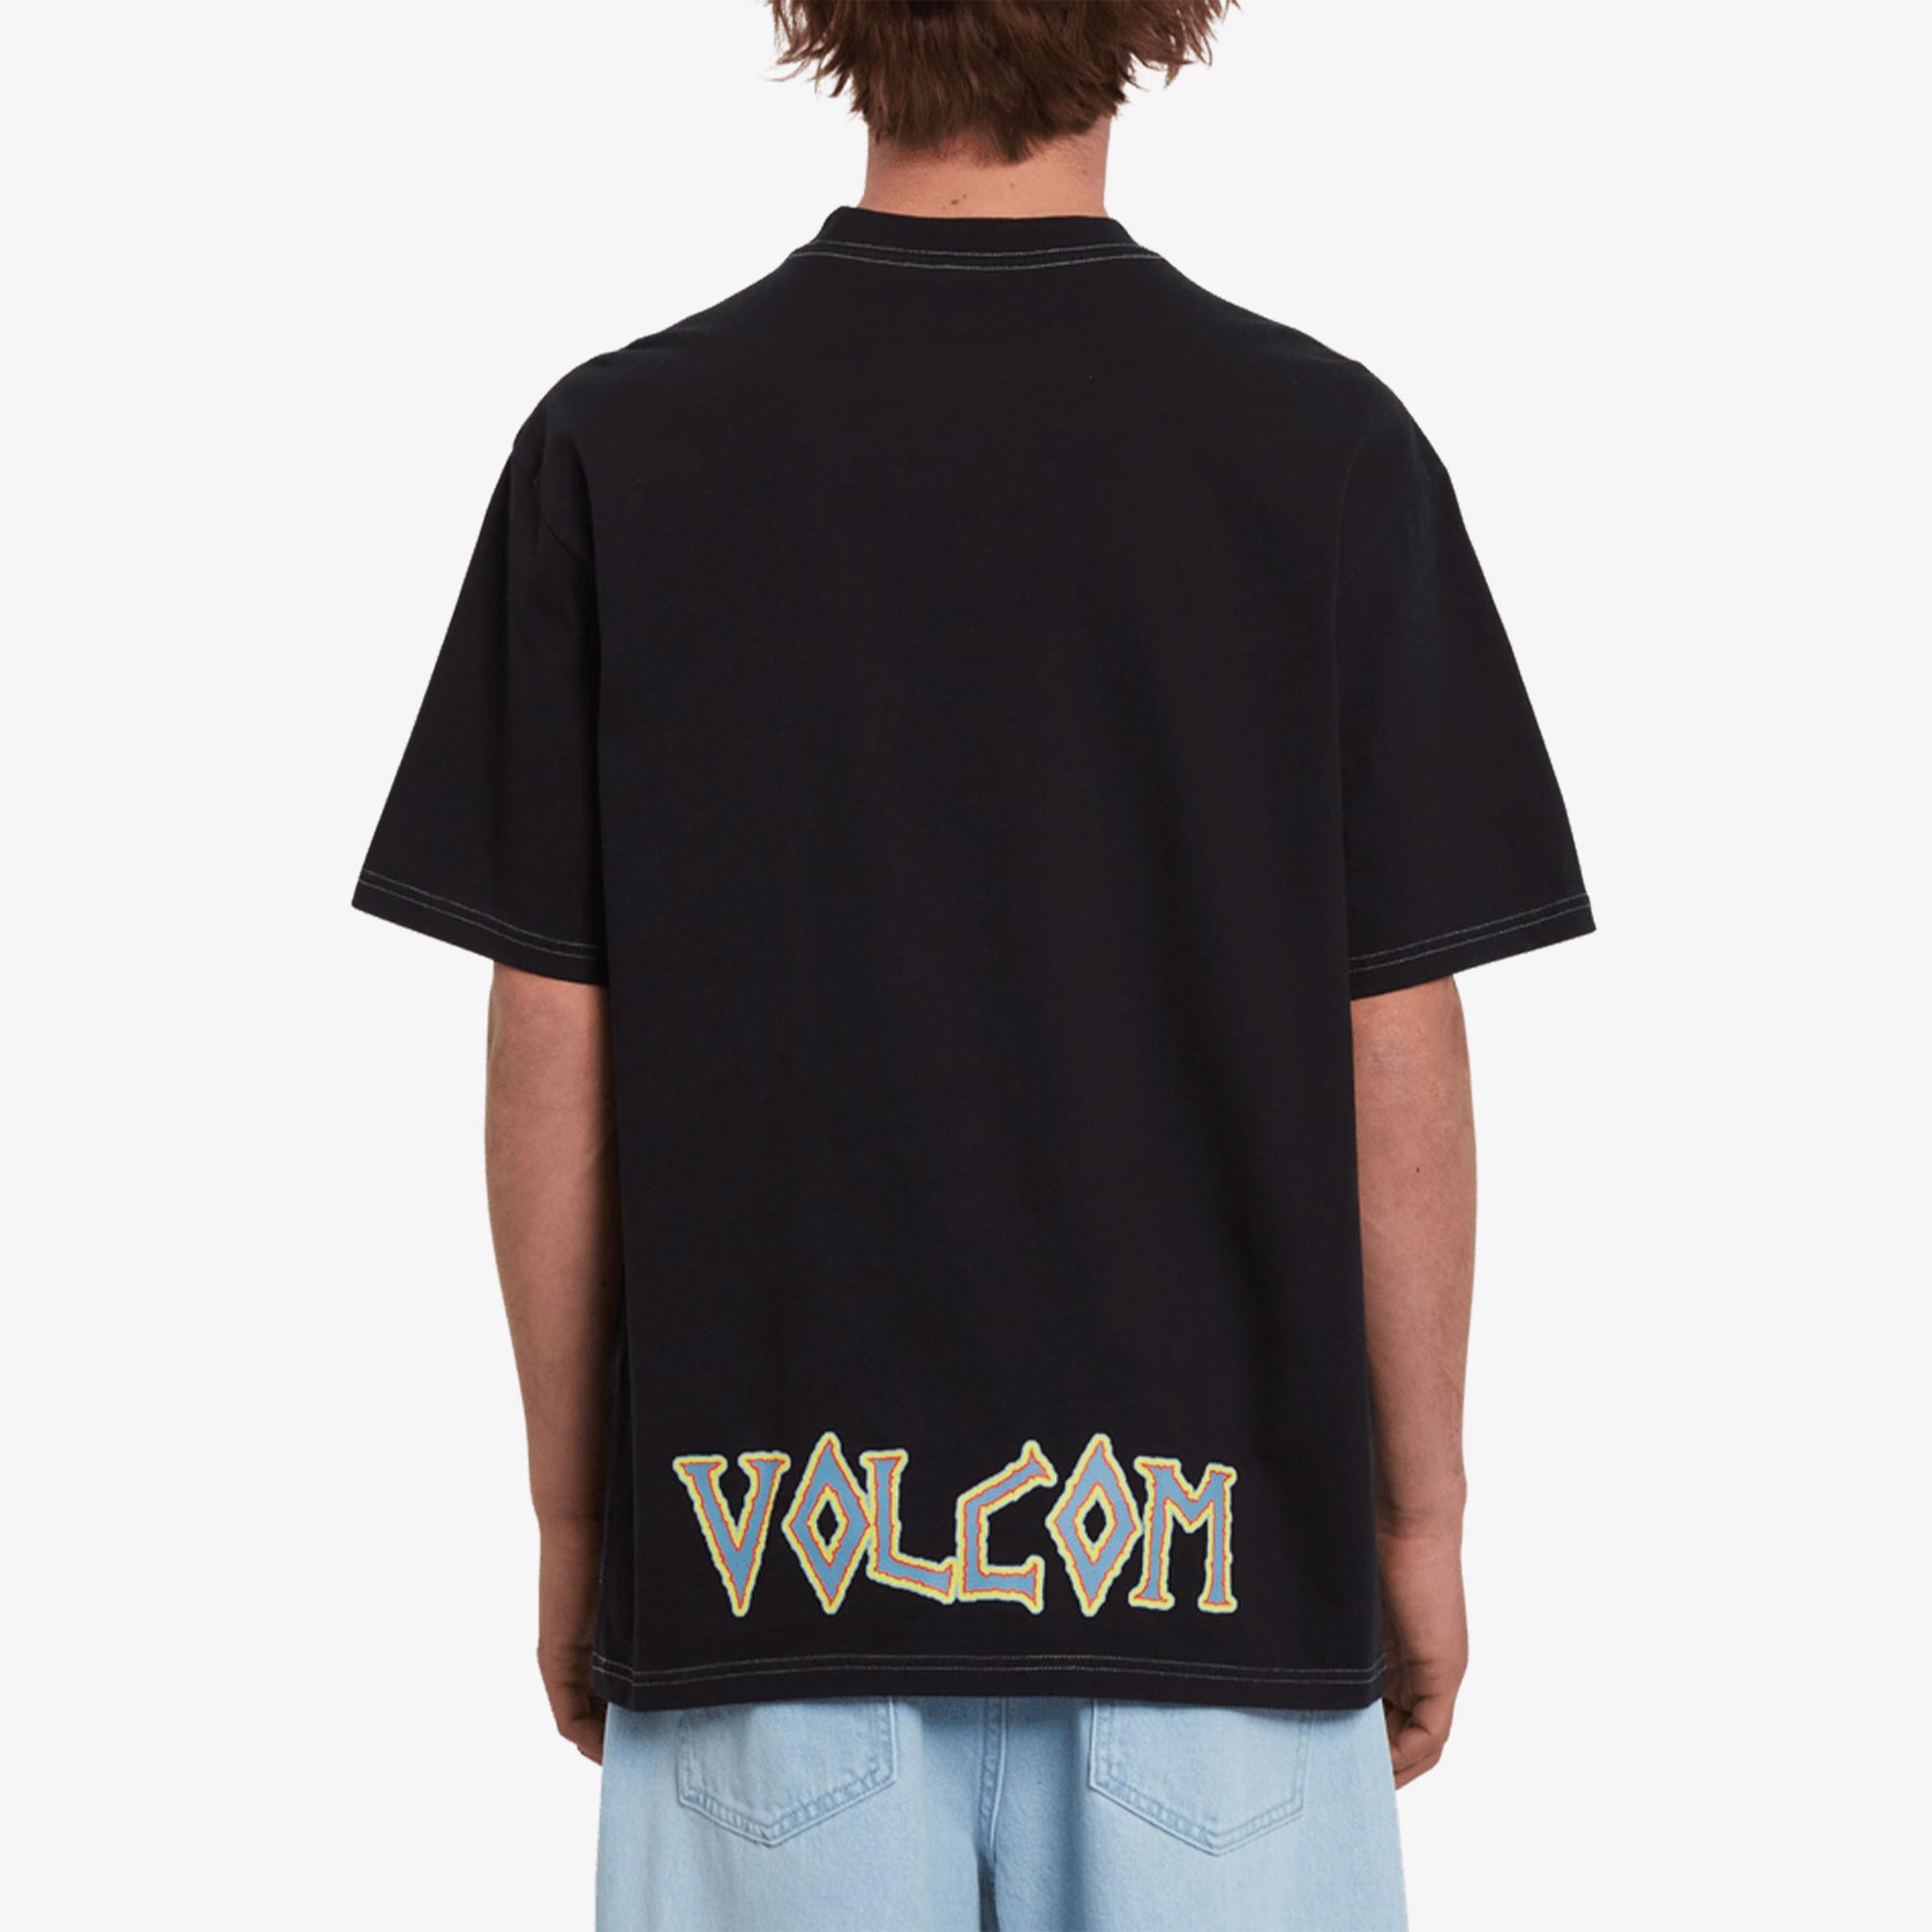  Volcom Richard French Erkek Siyah T-Shirt